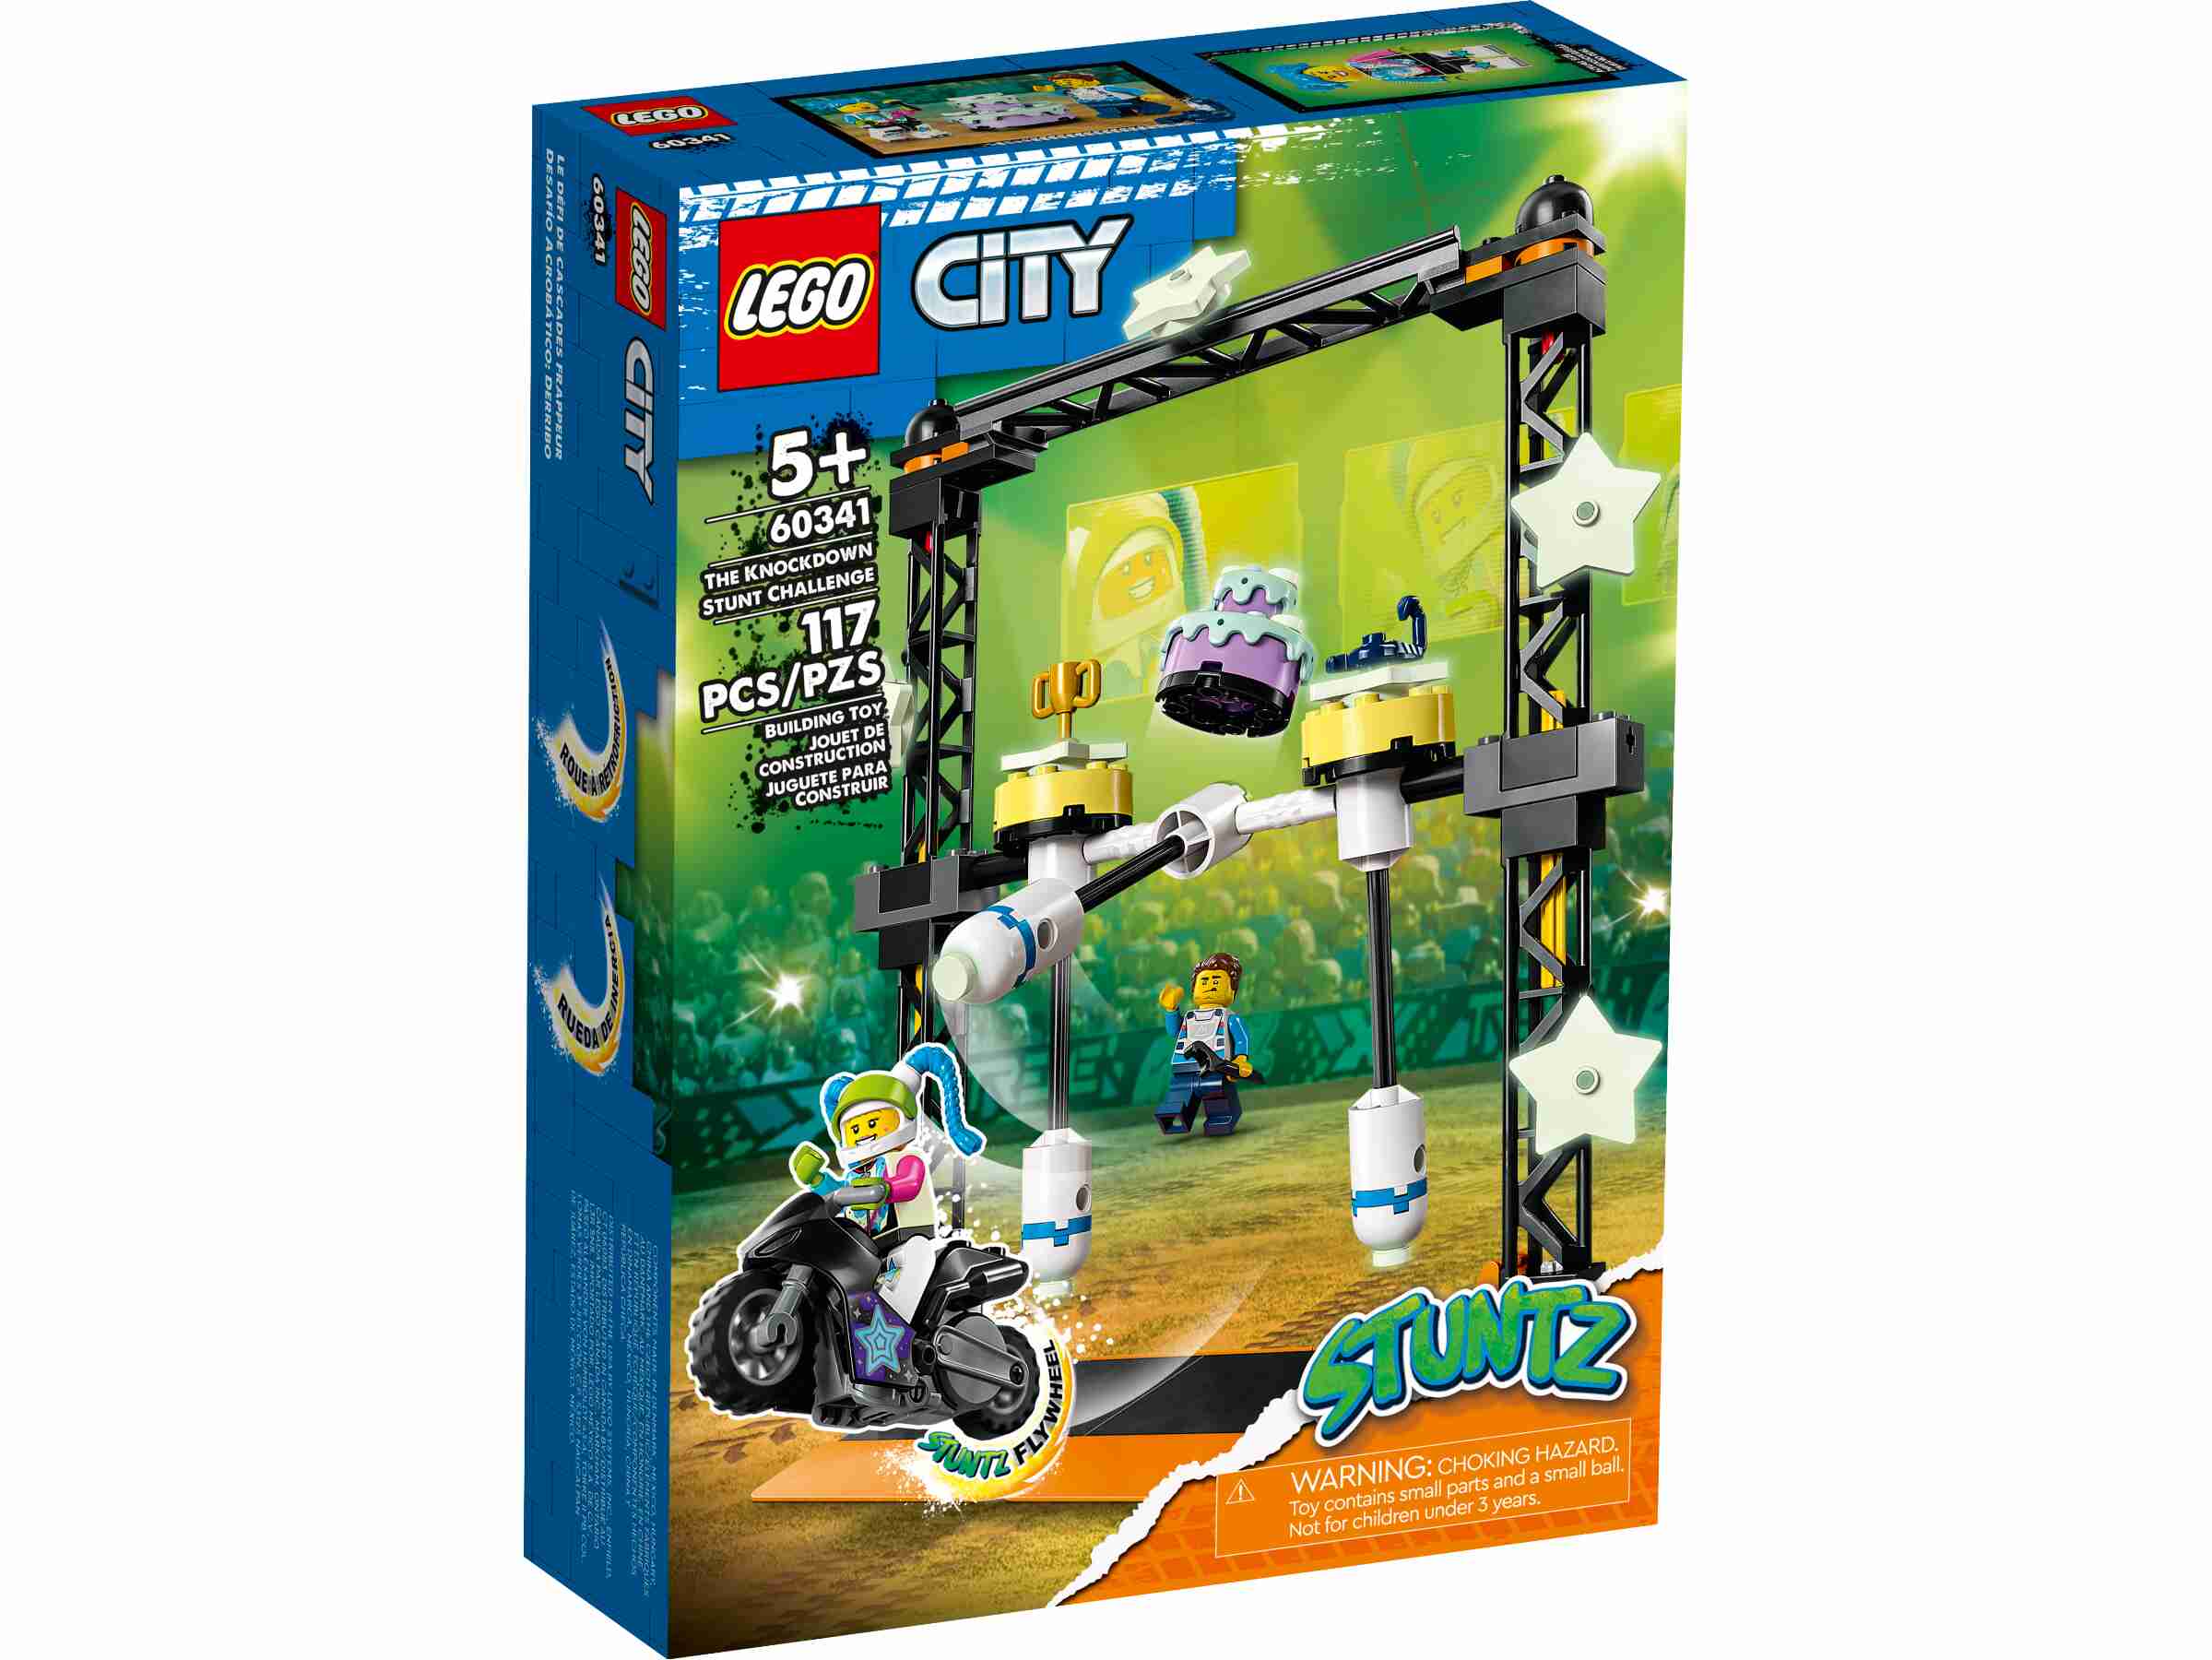 LEGO 60341 City Stuntz Umstoß-Challenge Set, inkl. Motorrad u. Stunt Racer Figur